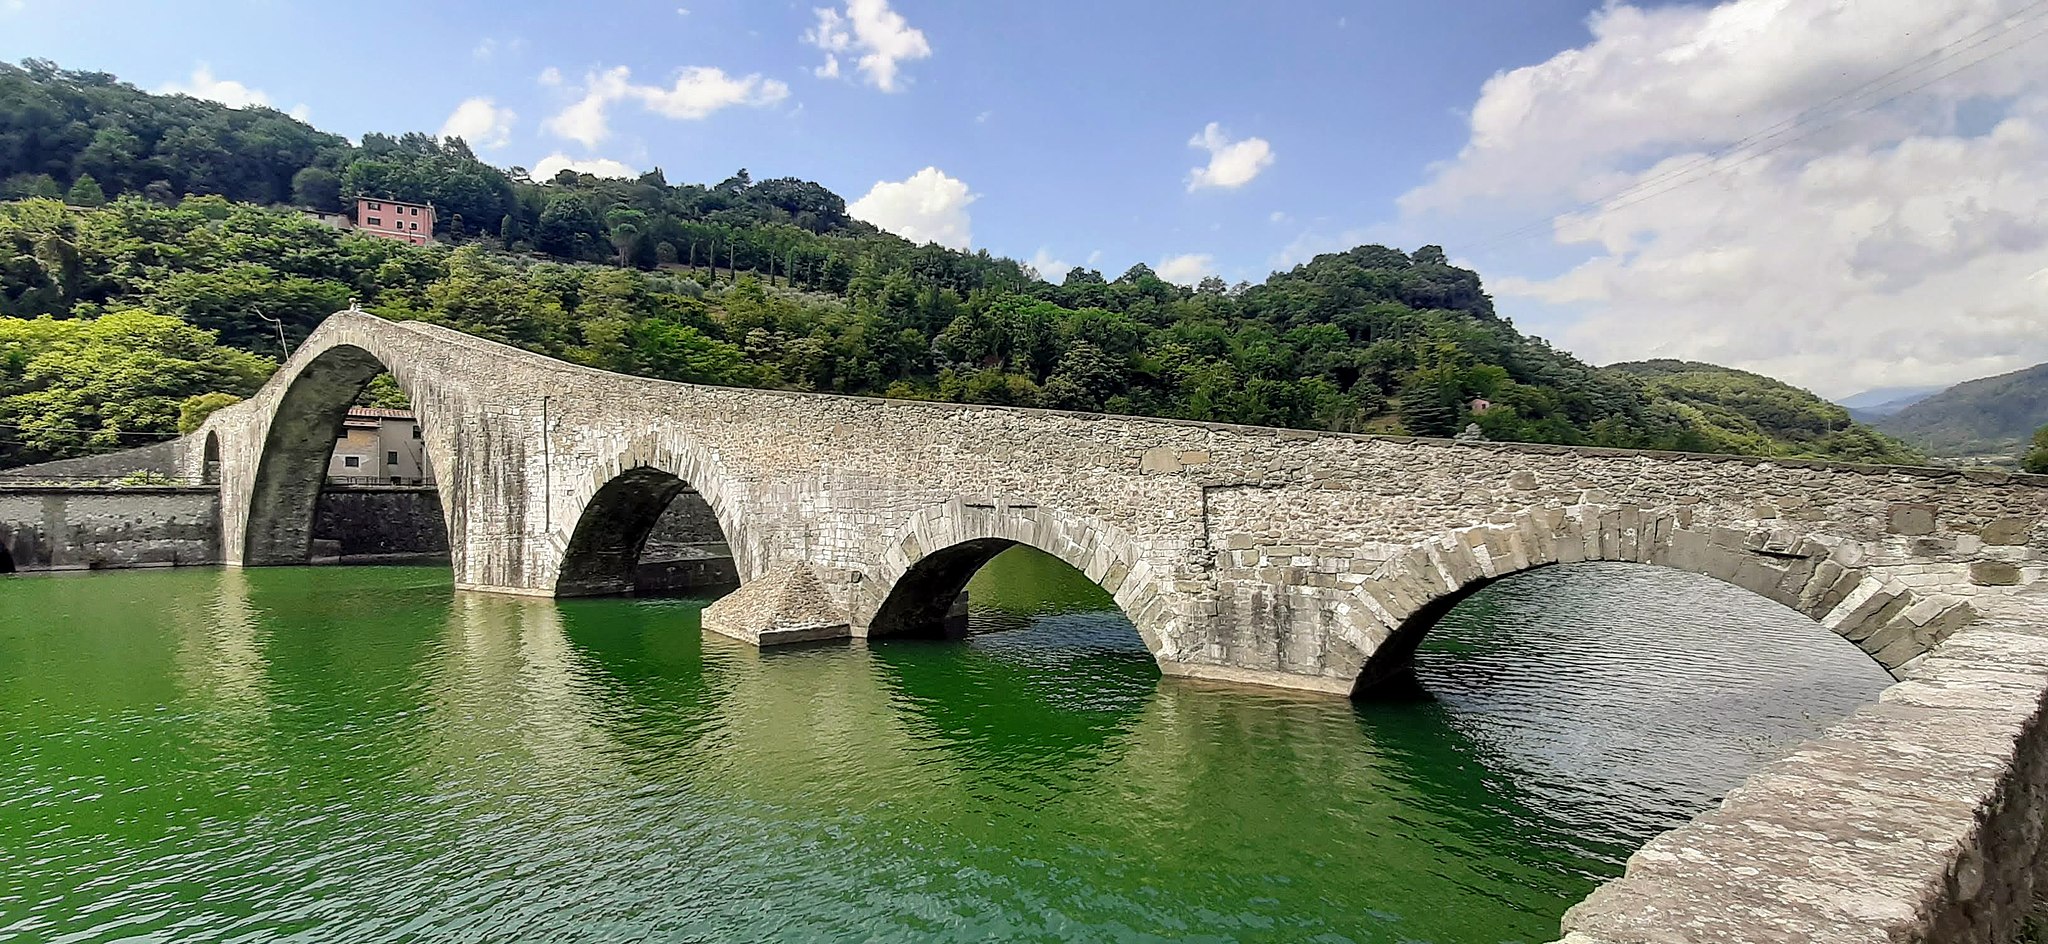 The Ponte del Diavolo in Borgo in Mozzano